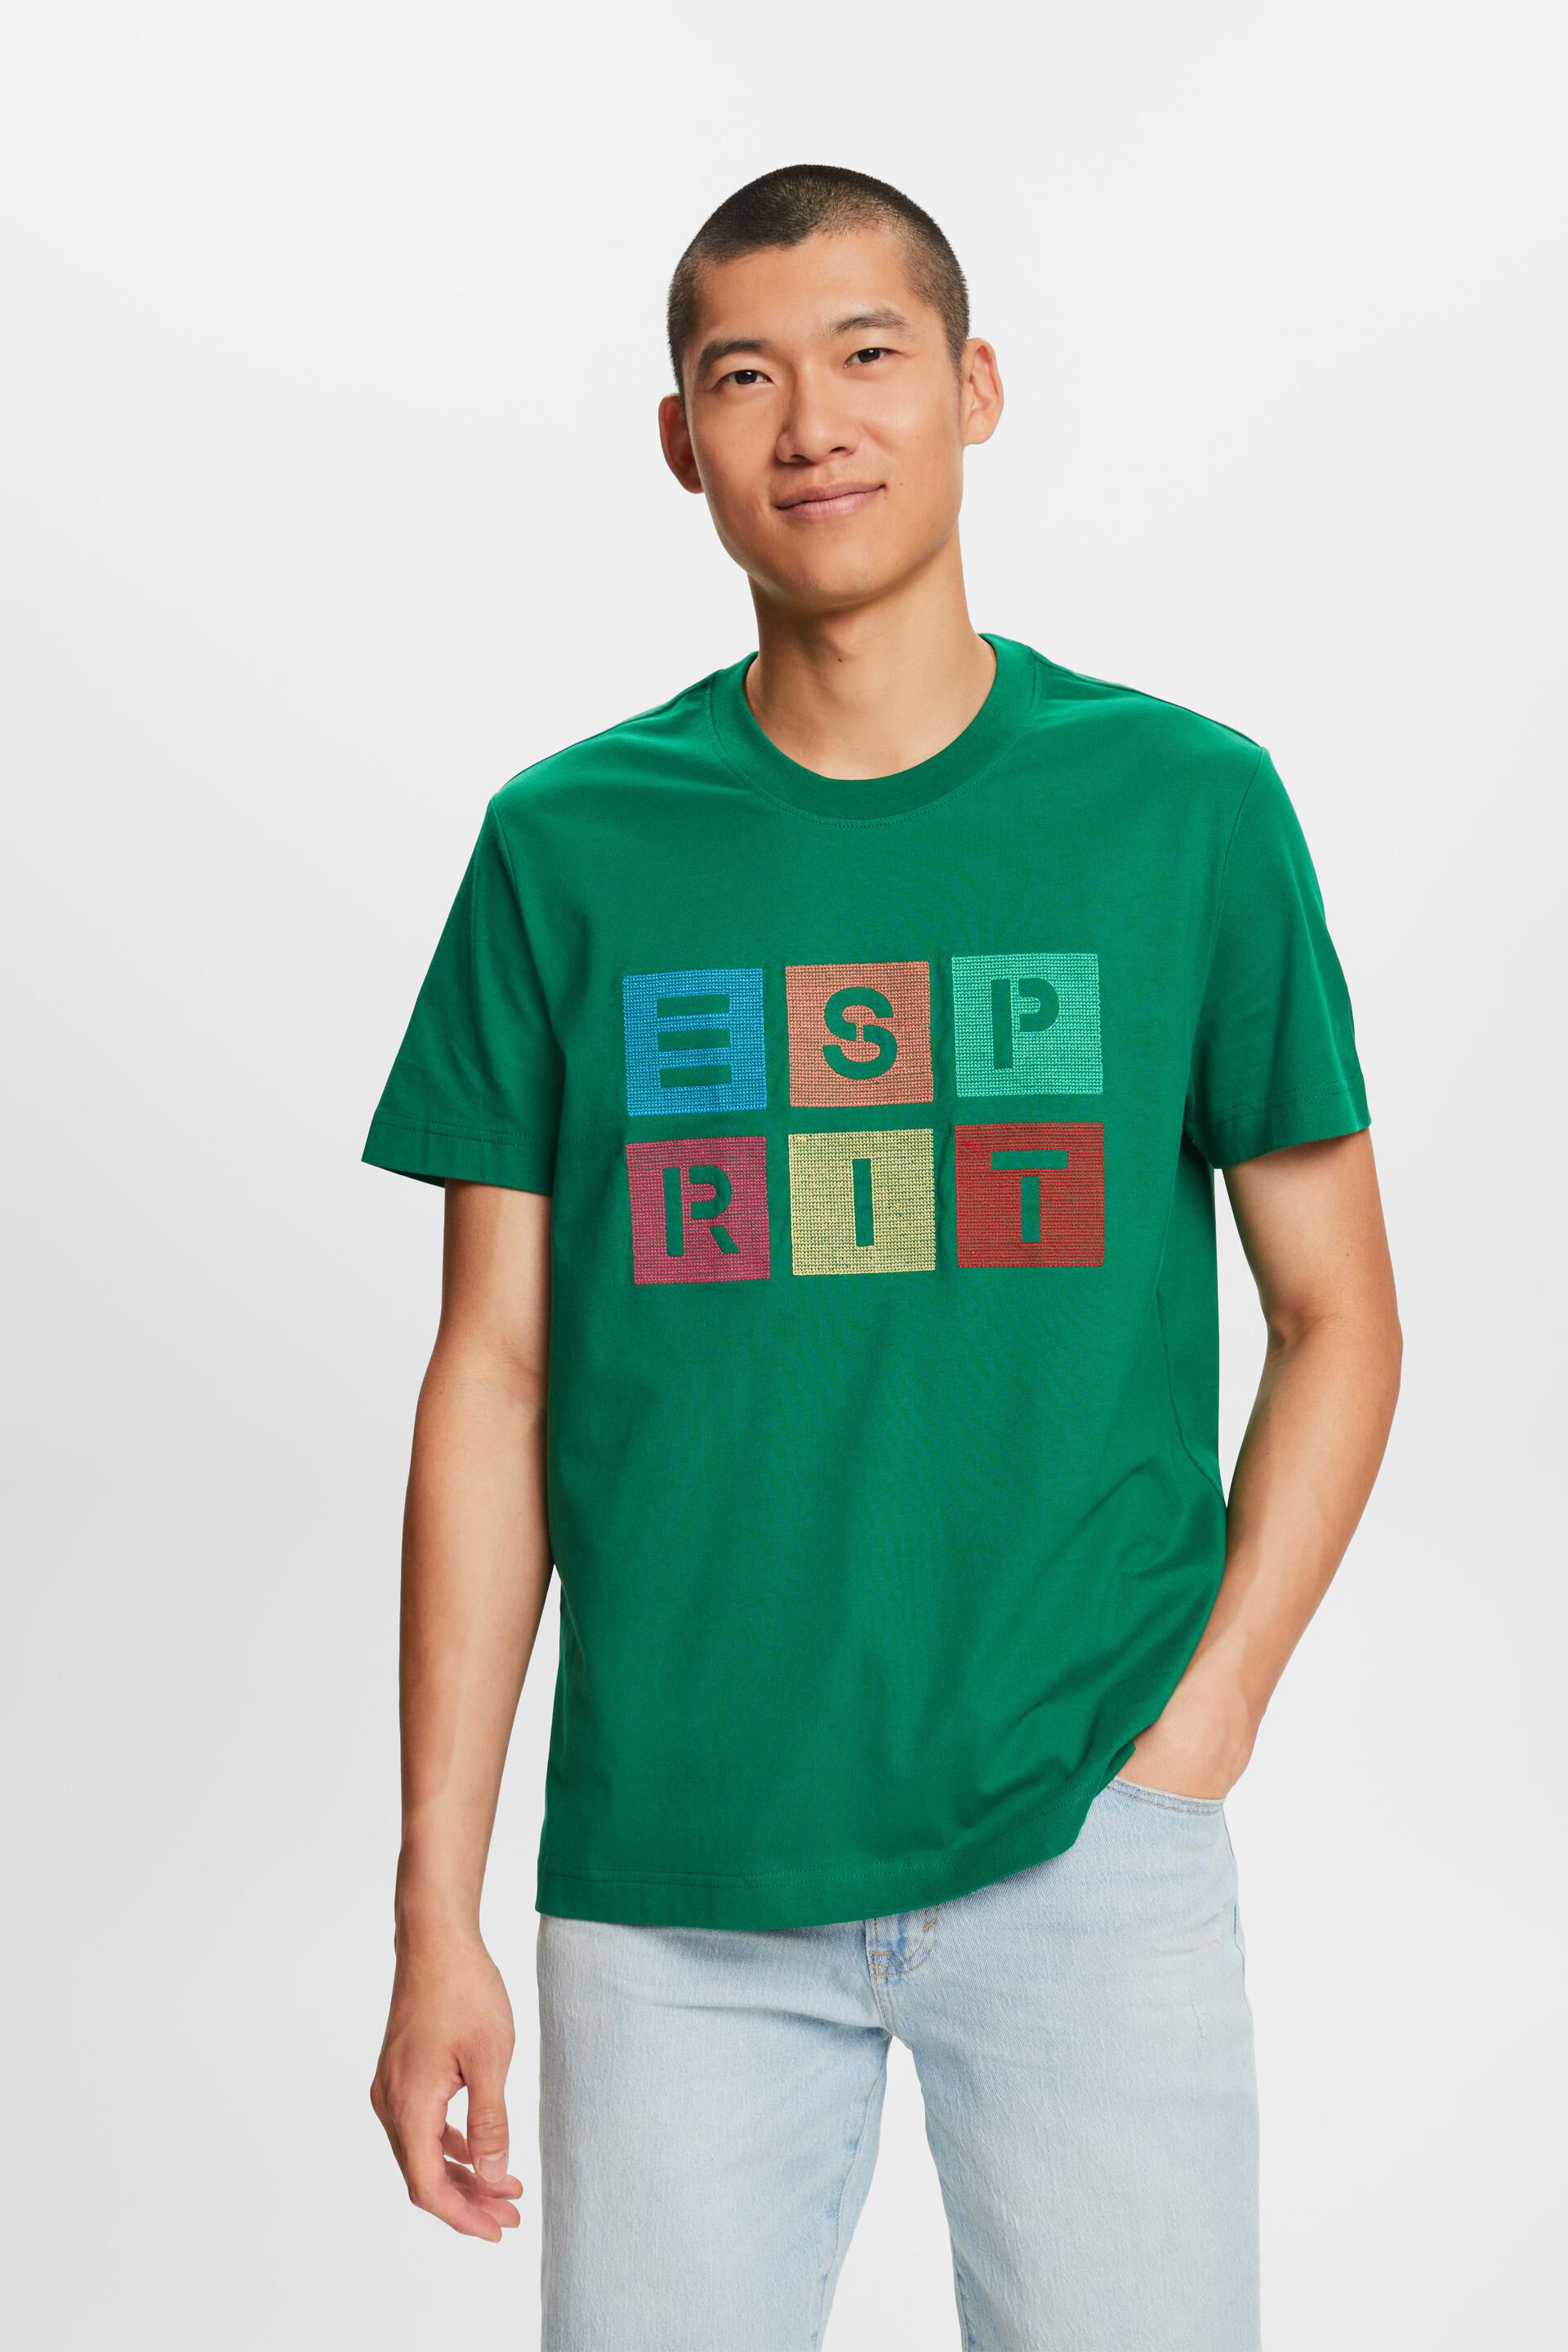 Esprit t-shirt, cotton Logo 100%